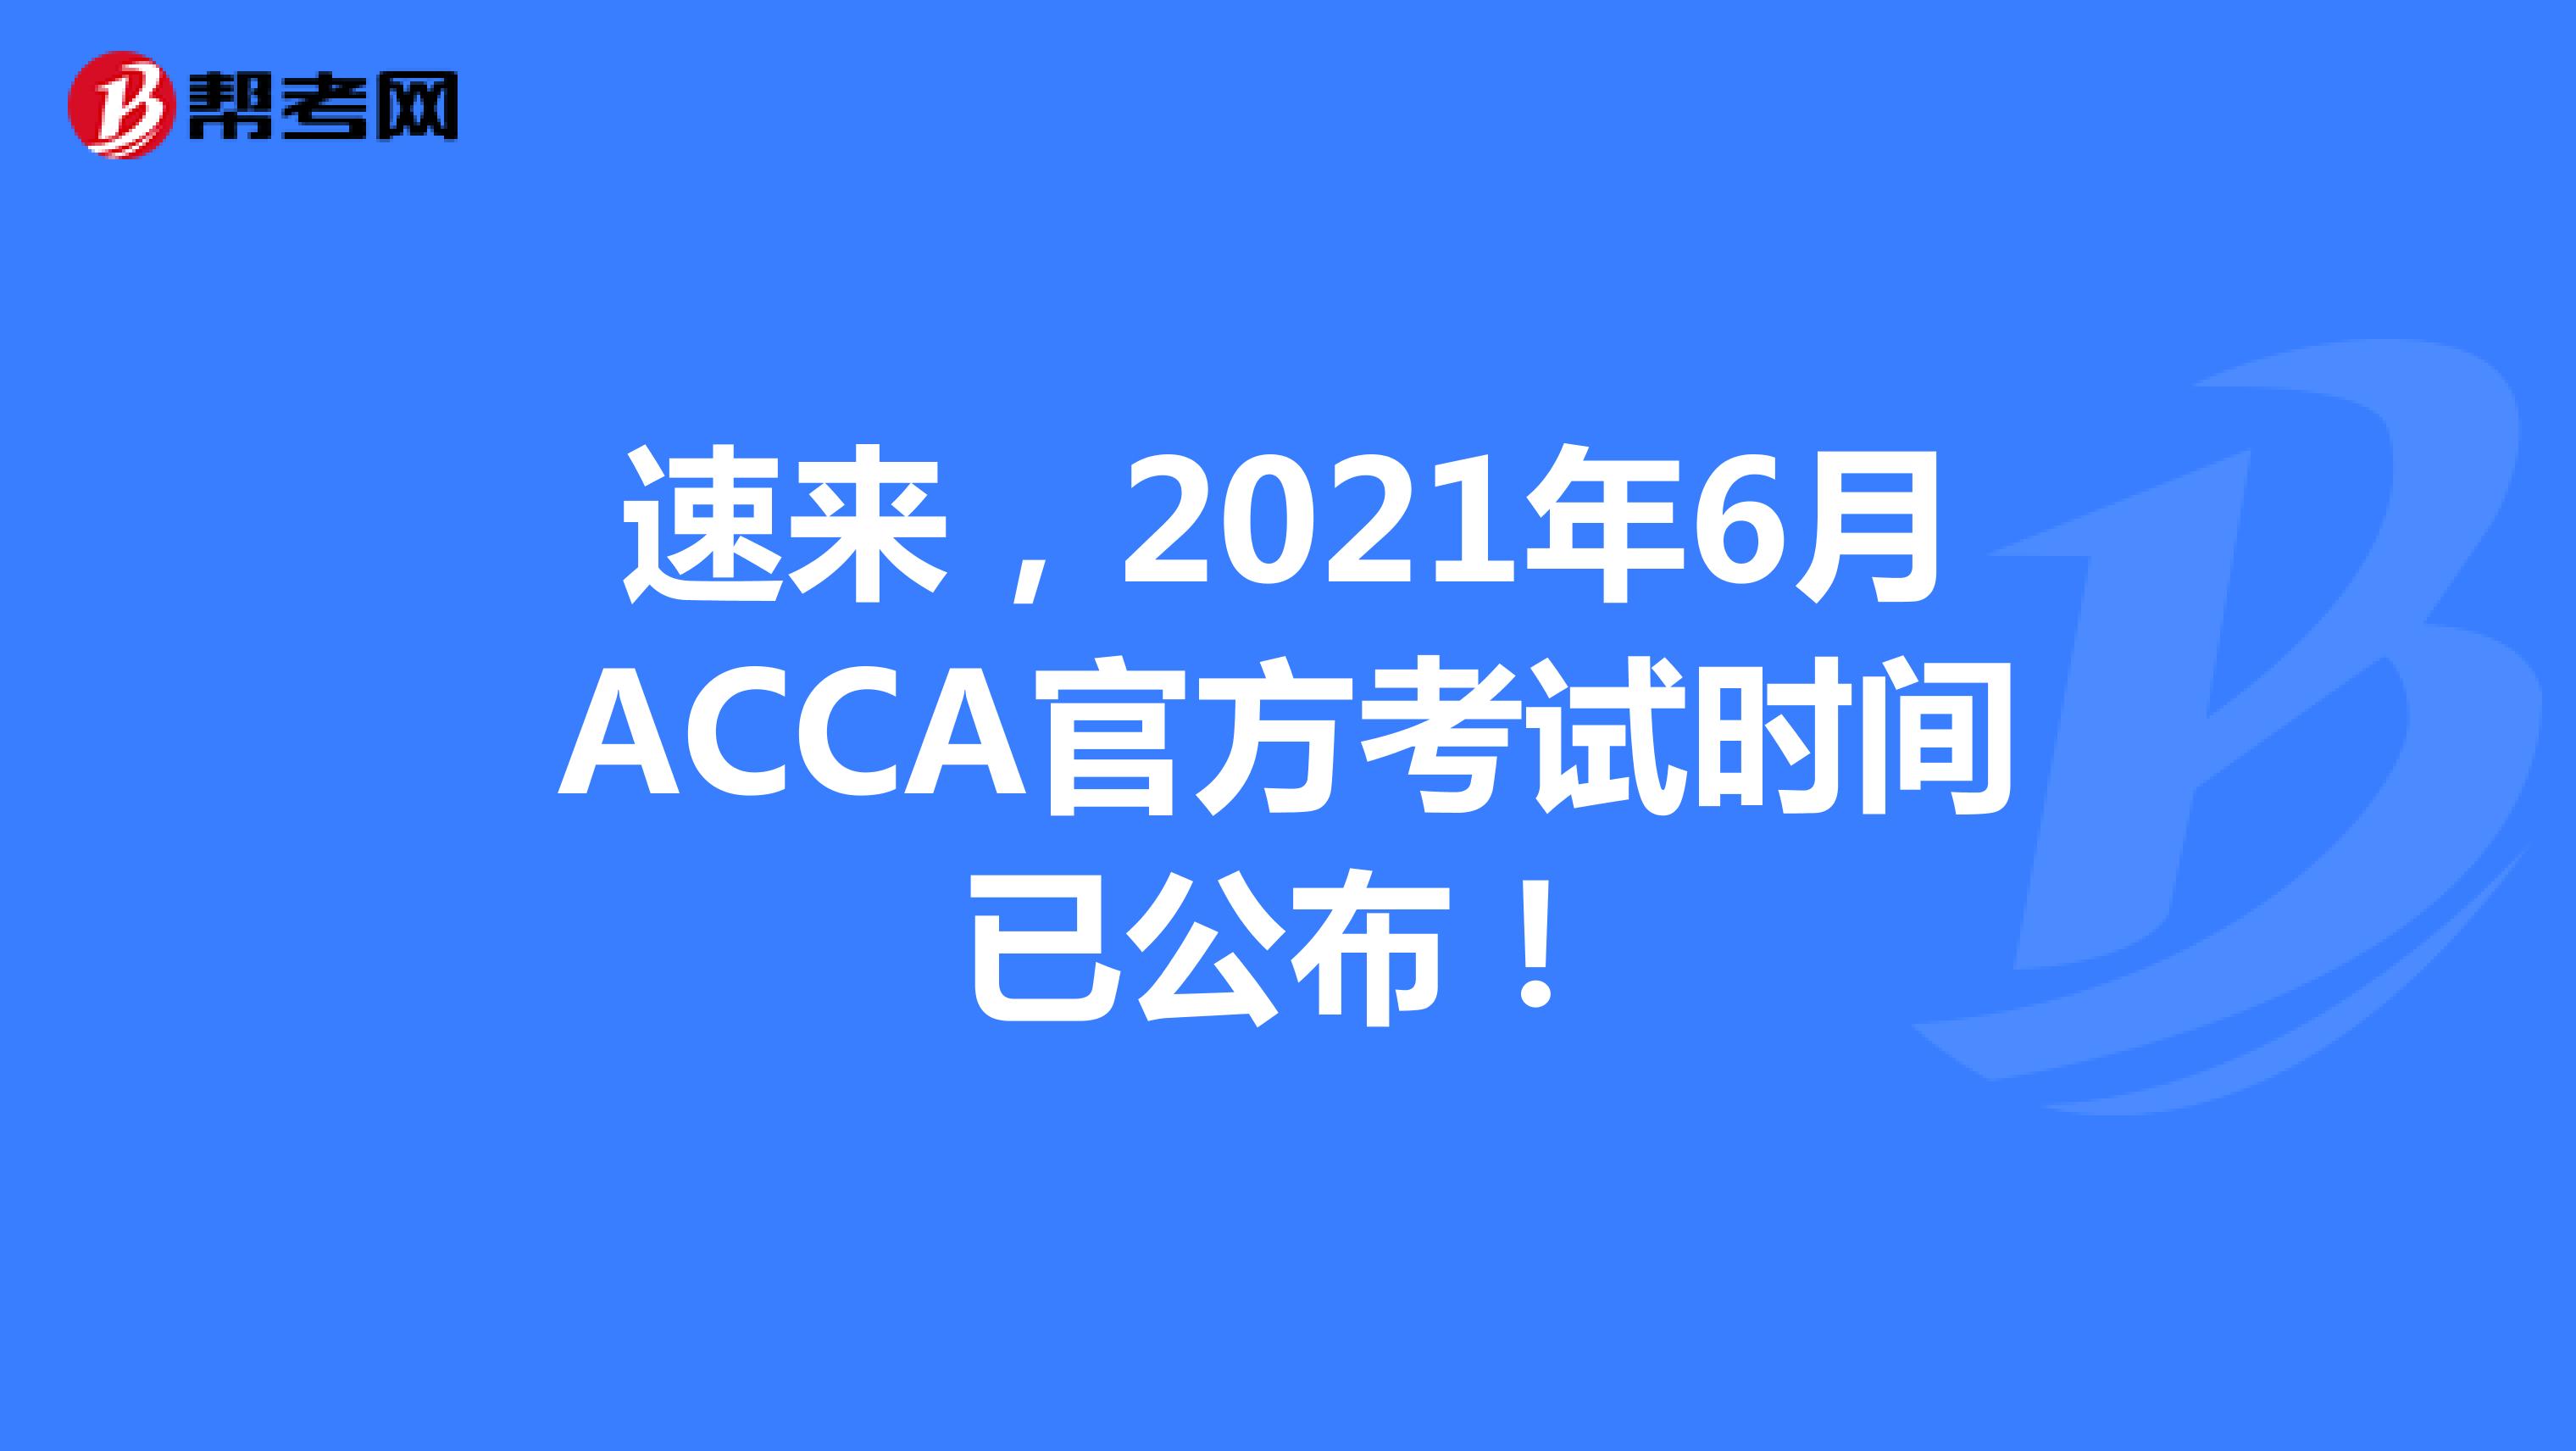 速来，2021年6月ACCA官方考试时间已公布！